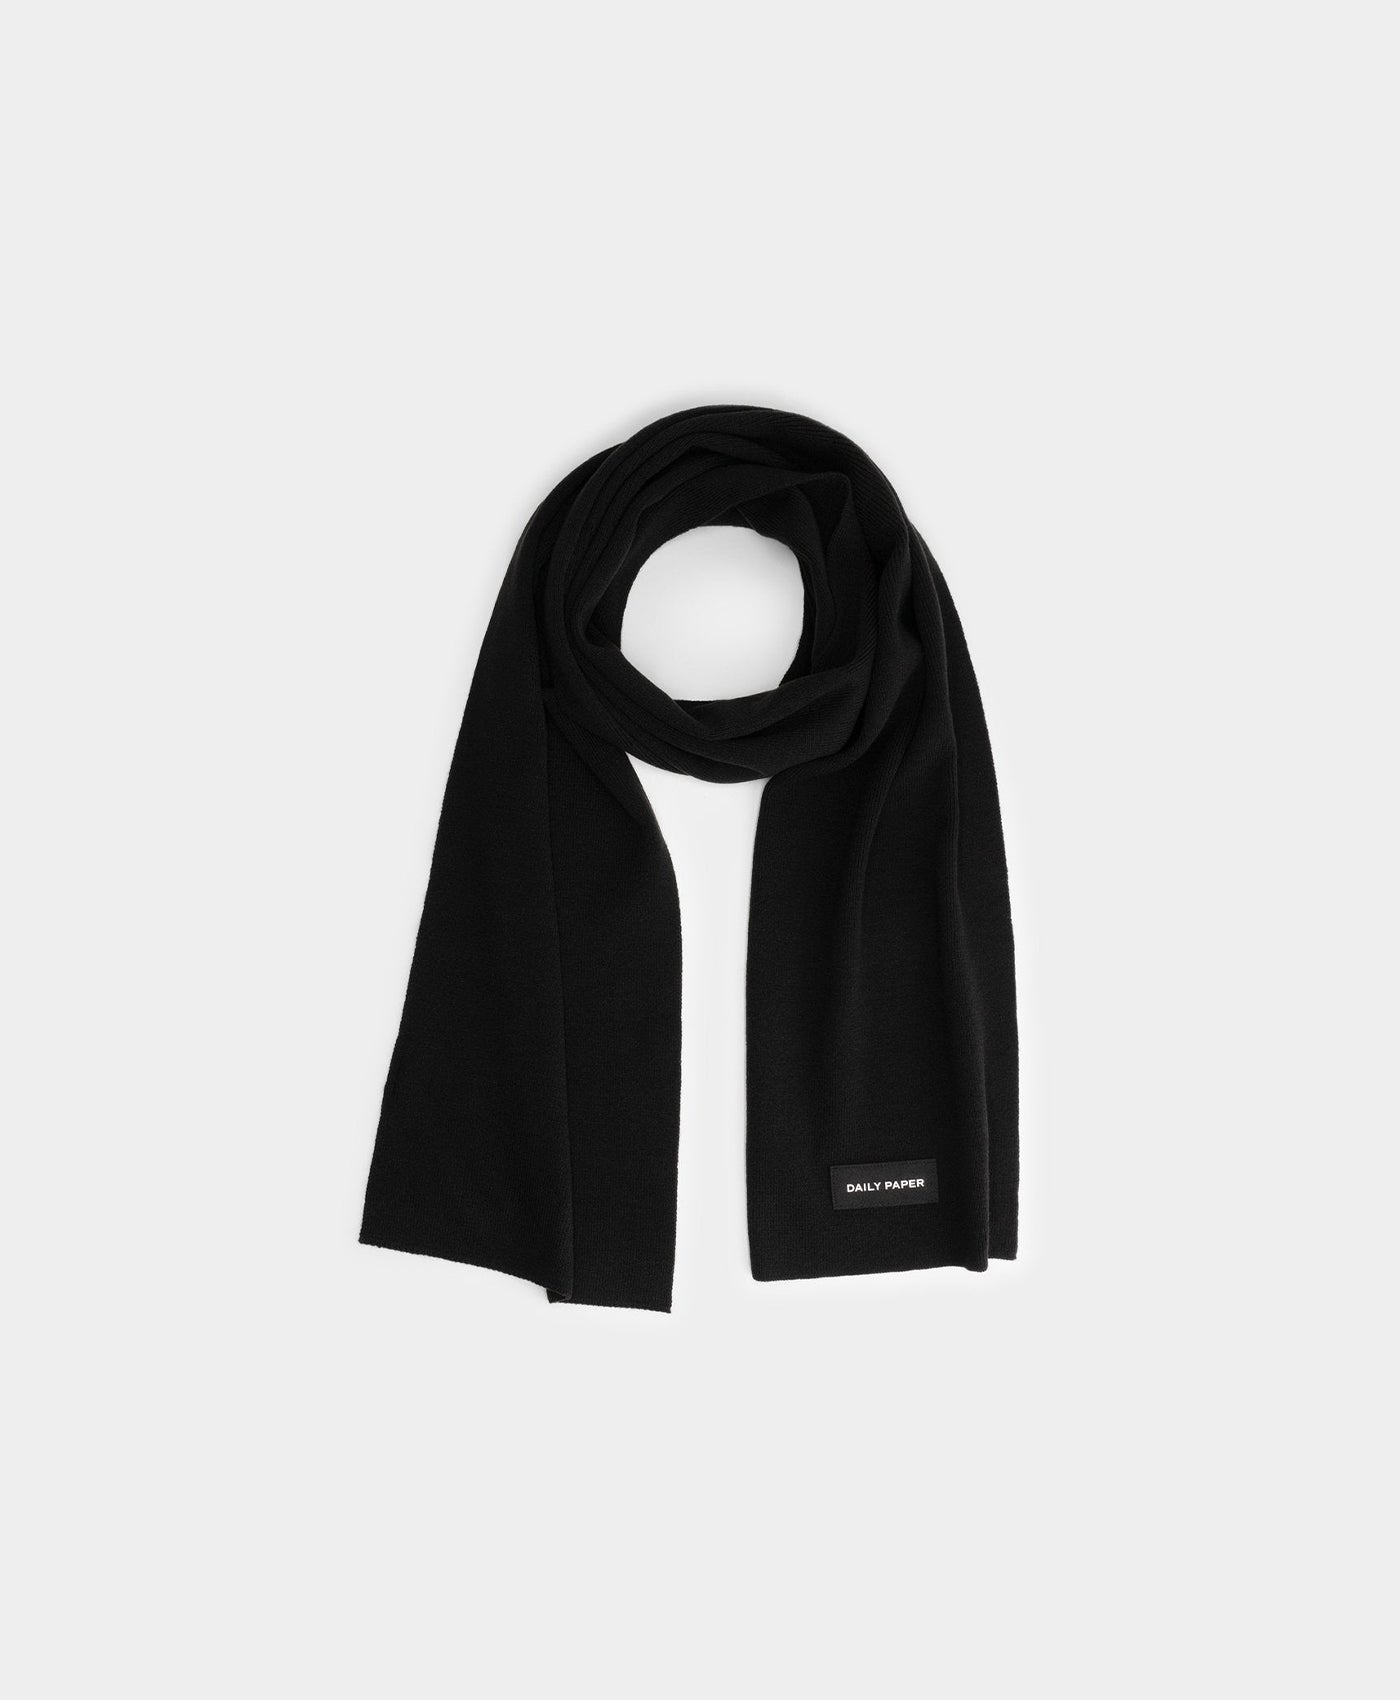 DP - Black Escarf - Packshot - Front